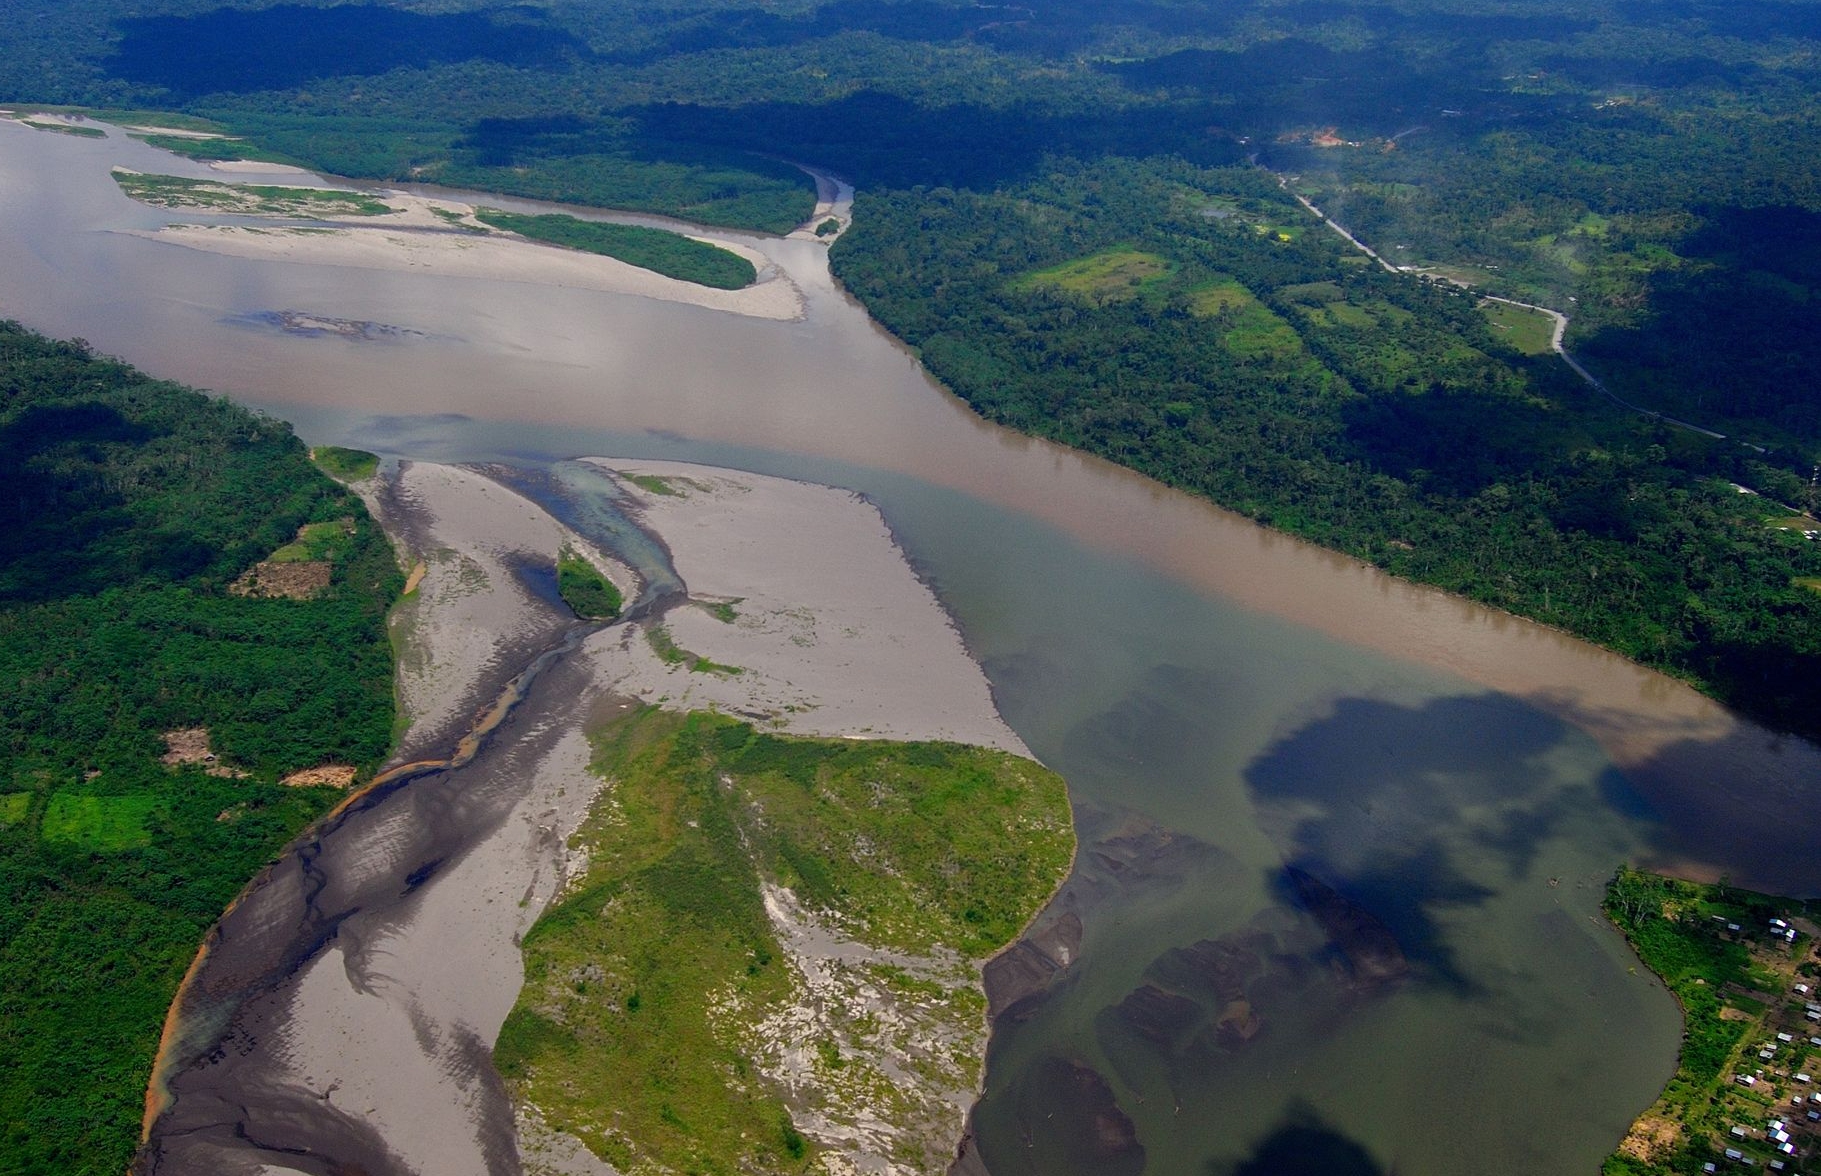 La première remontée complète de l'Amazone par les Européens fut celle de l'expédition menée en 1638 par Pedro Texeira, un Portugais, qui emprunta le Rio Napo (ici en photo), l'un des affluents, pour atteindre Quito, en Équateur. Ailleurs, le confluent du rio Solimões (aux eaux boueuses) et du Rio Negro (aux eaux noires) est remarquable par les teintes très contrastées, les eaux ne se mélangeant qu'après des dizaines de kilomètres. © Rio NAPO Amazonia, Wikimedia Commons, cc by sa 2.0